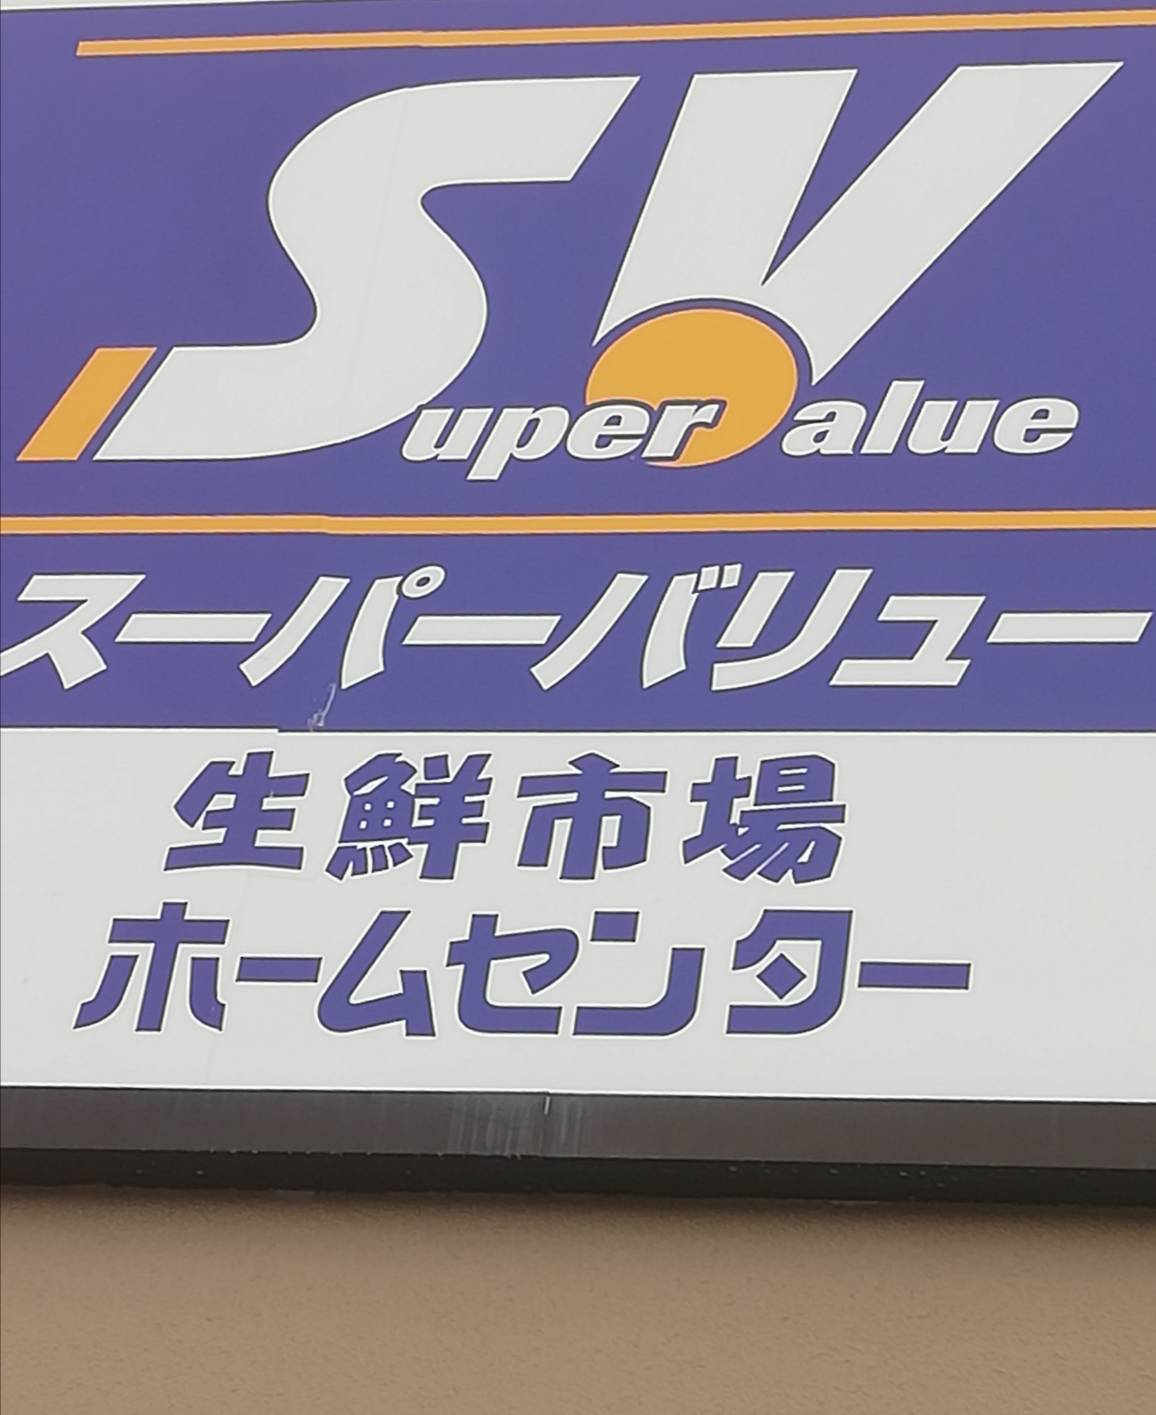 スーパーバリュー松戸五香店リニューアルオープン